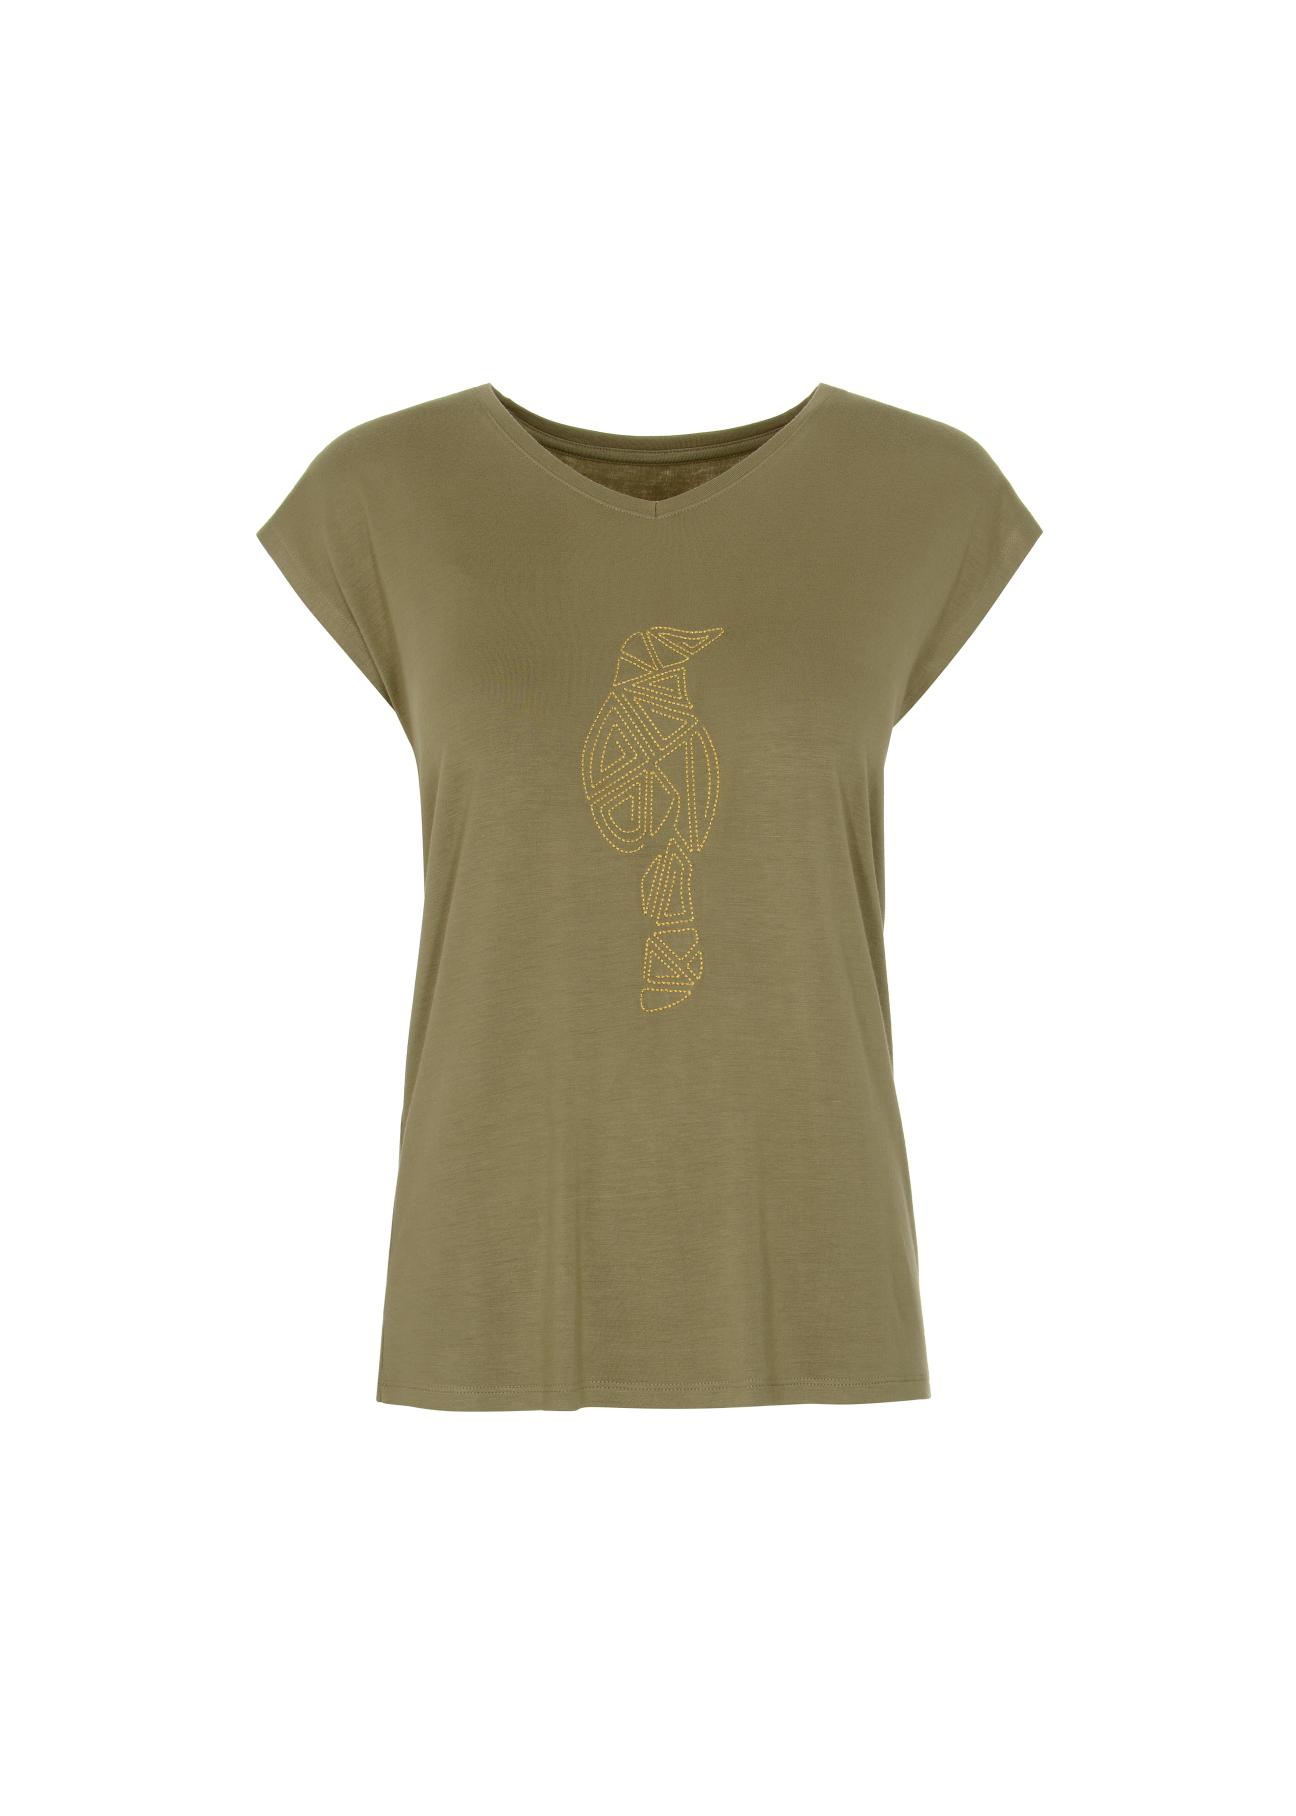 Oliwkowy T-shirt damski z aplikacją TSHDT-0066-55(W22)